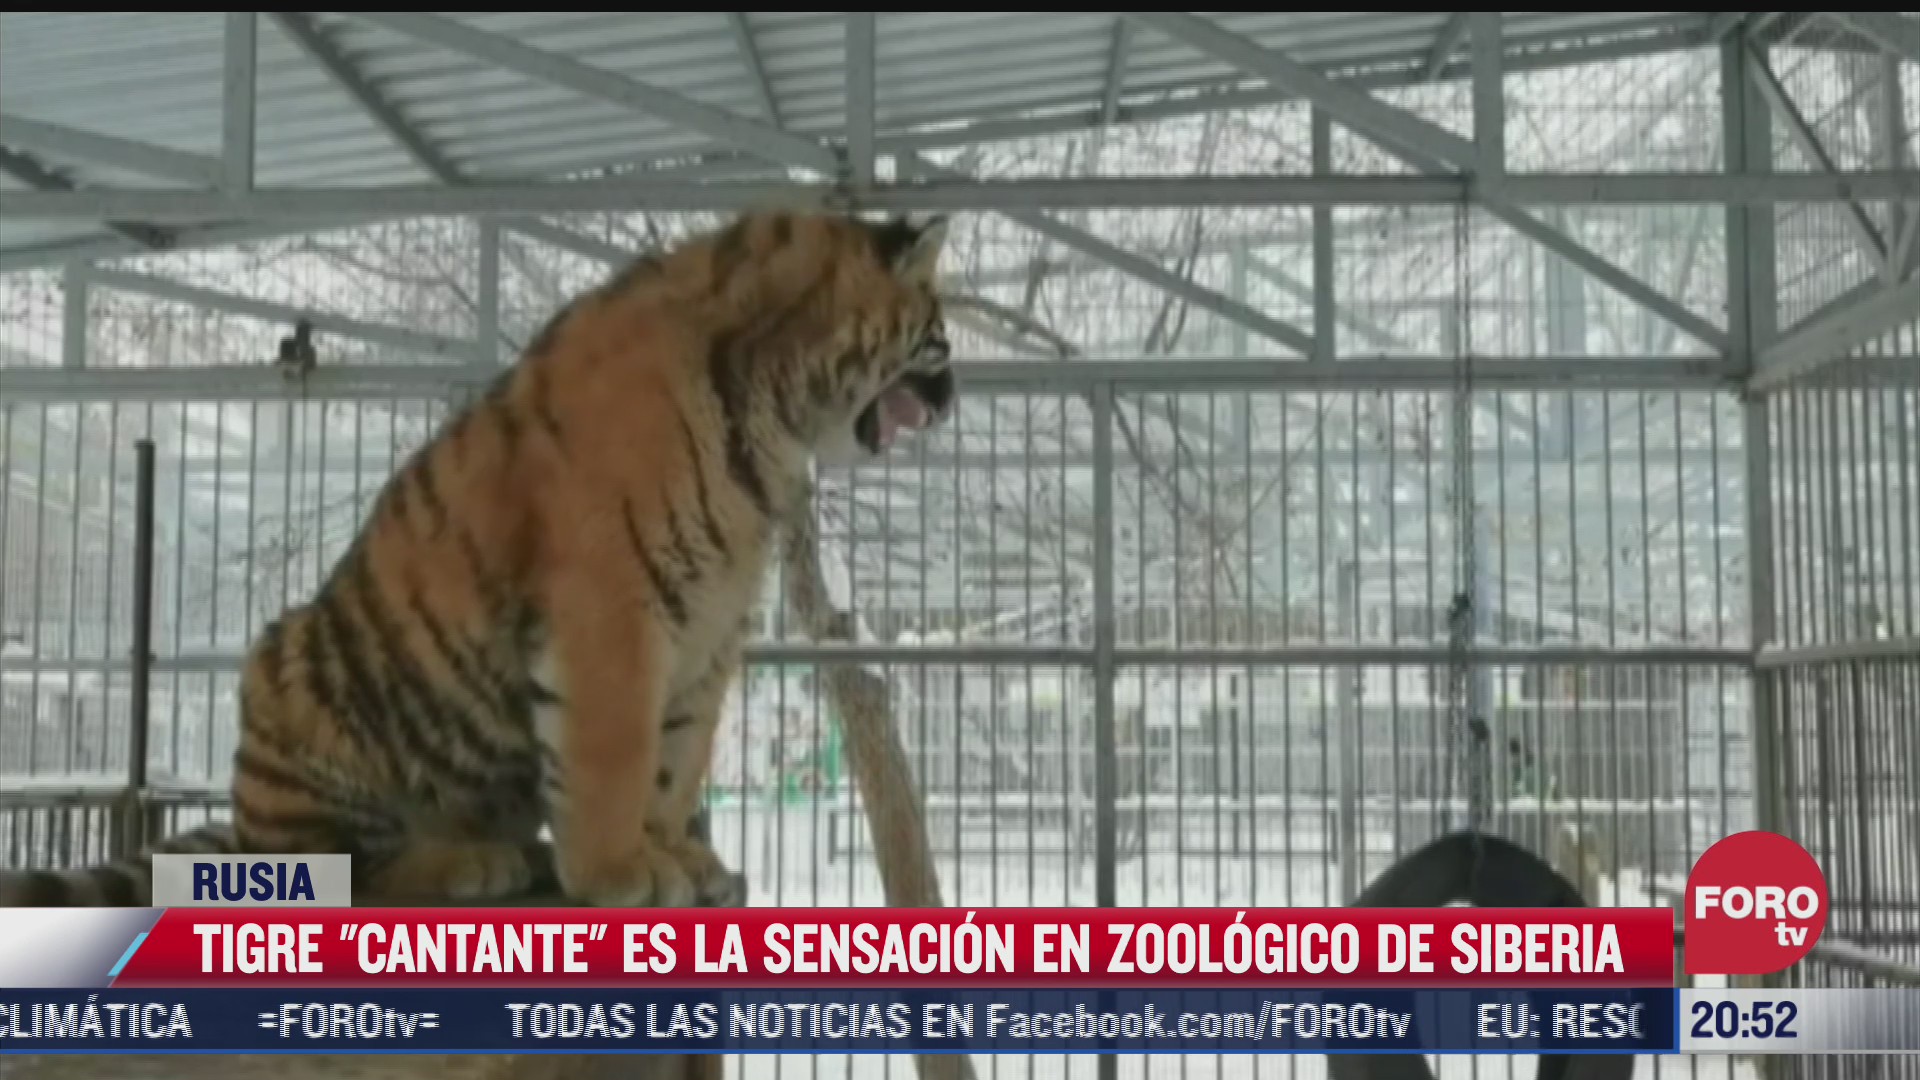 tigre cantante causa sensacion en zoologico de siberia